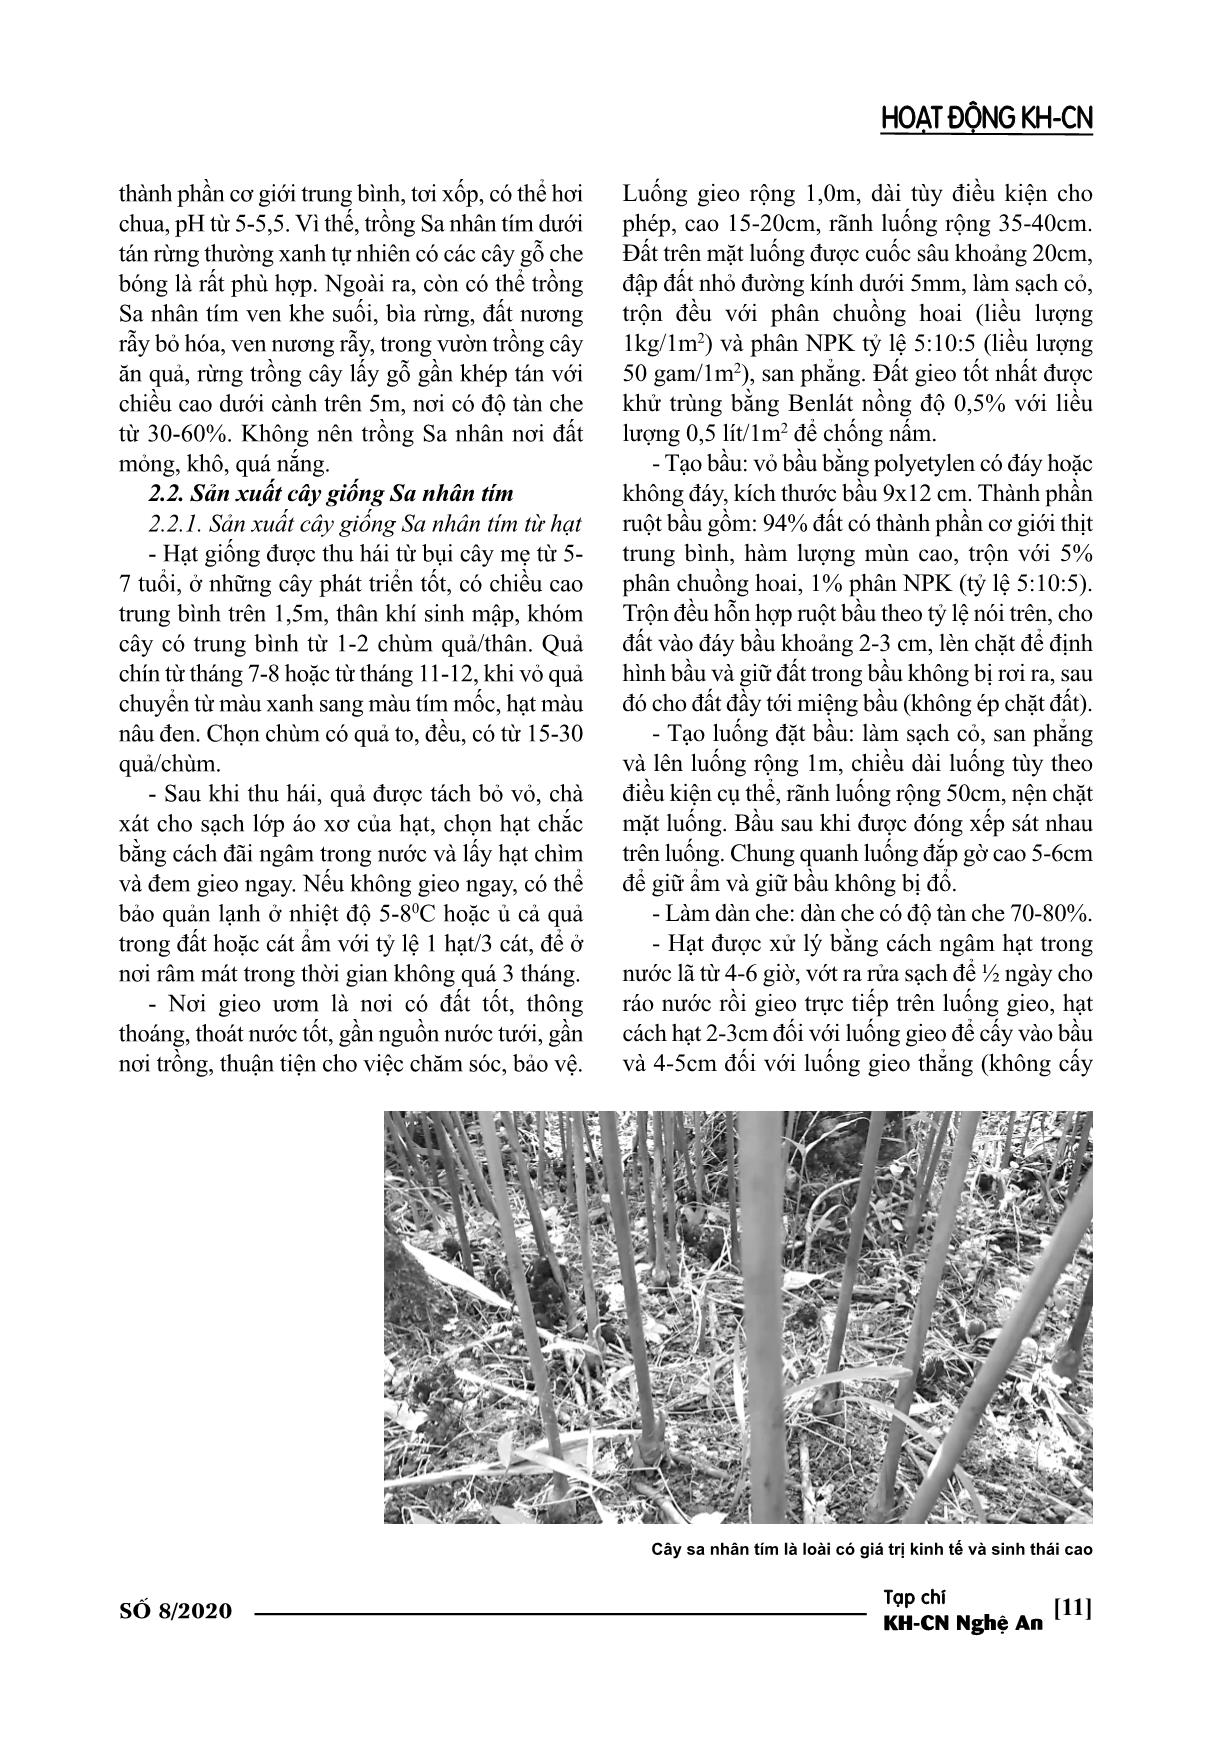 Thử nghiệm trồng cây sa nhân tím dưới tán rừng tự nhiên ở huyện Con Cuông trang 4